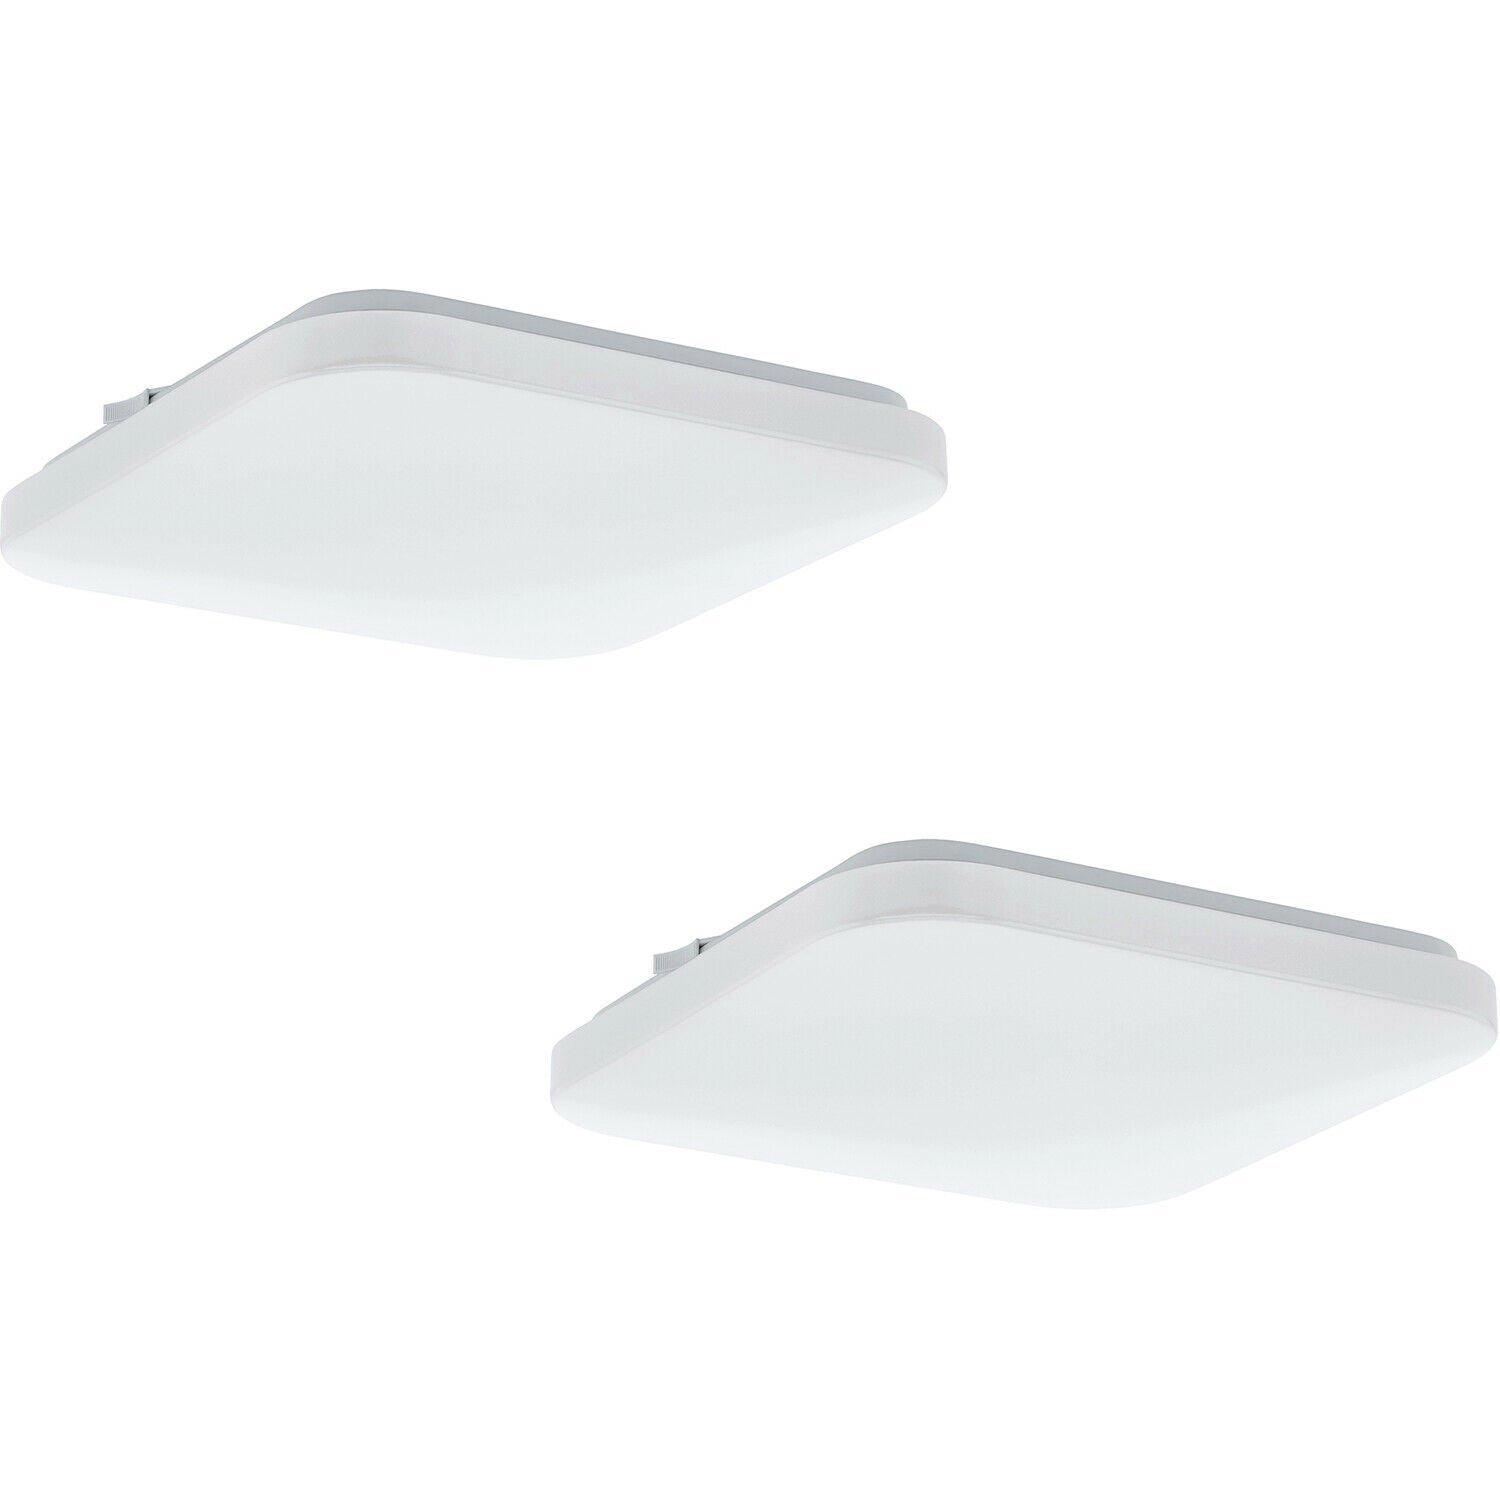 2 PACK Wall Flush Ceiling Light Colour White Shade White Plastic Bulb LED 11.5W